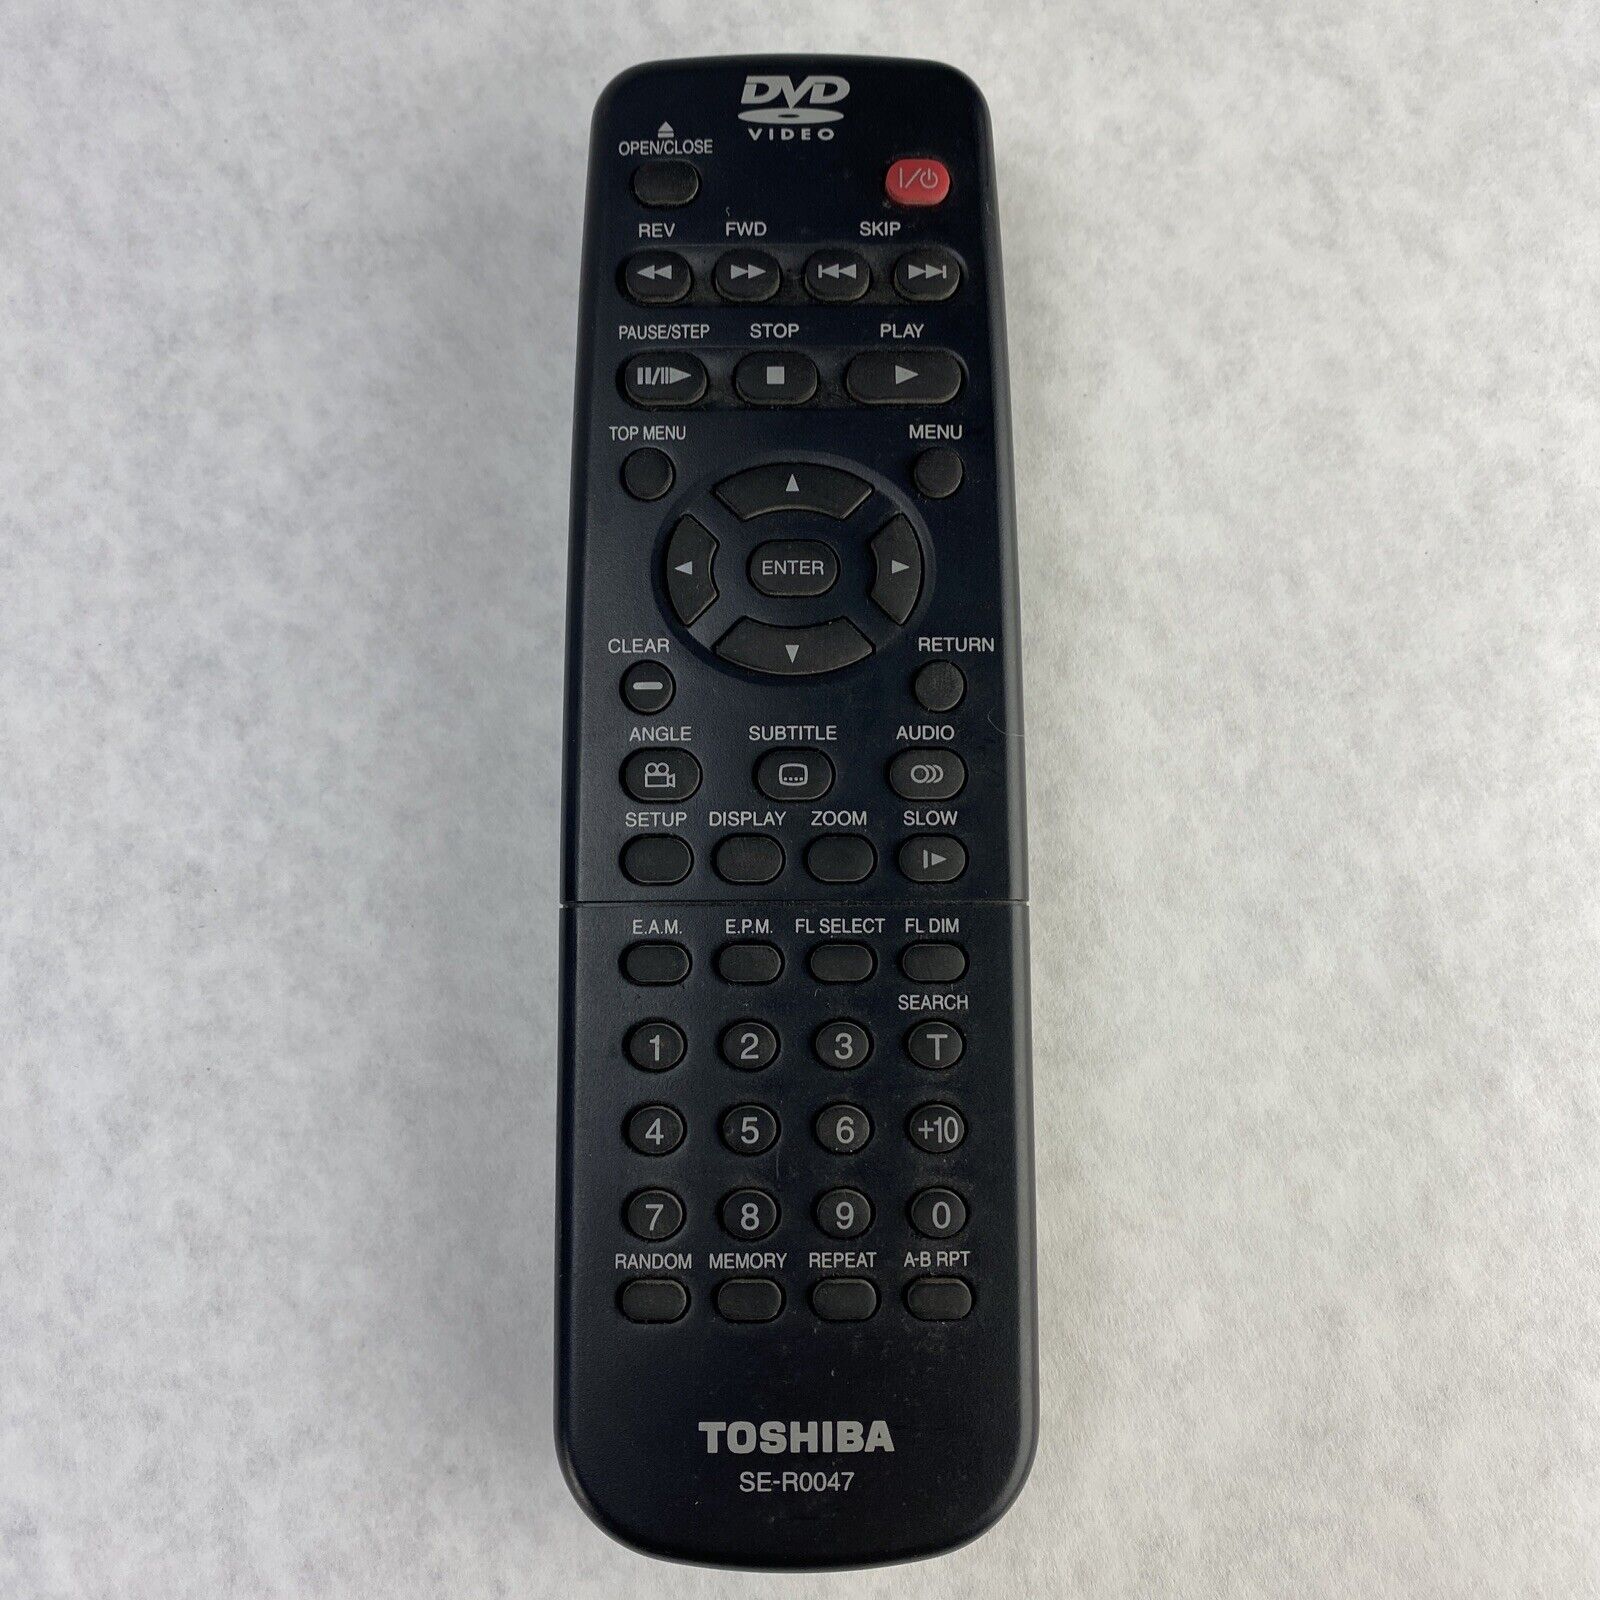 Toshiba SD-K620KU DVD Player Black Dolby Digital Color Stream w/ Remote TESTED